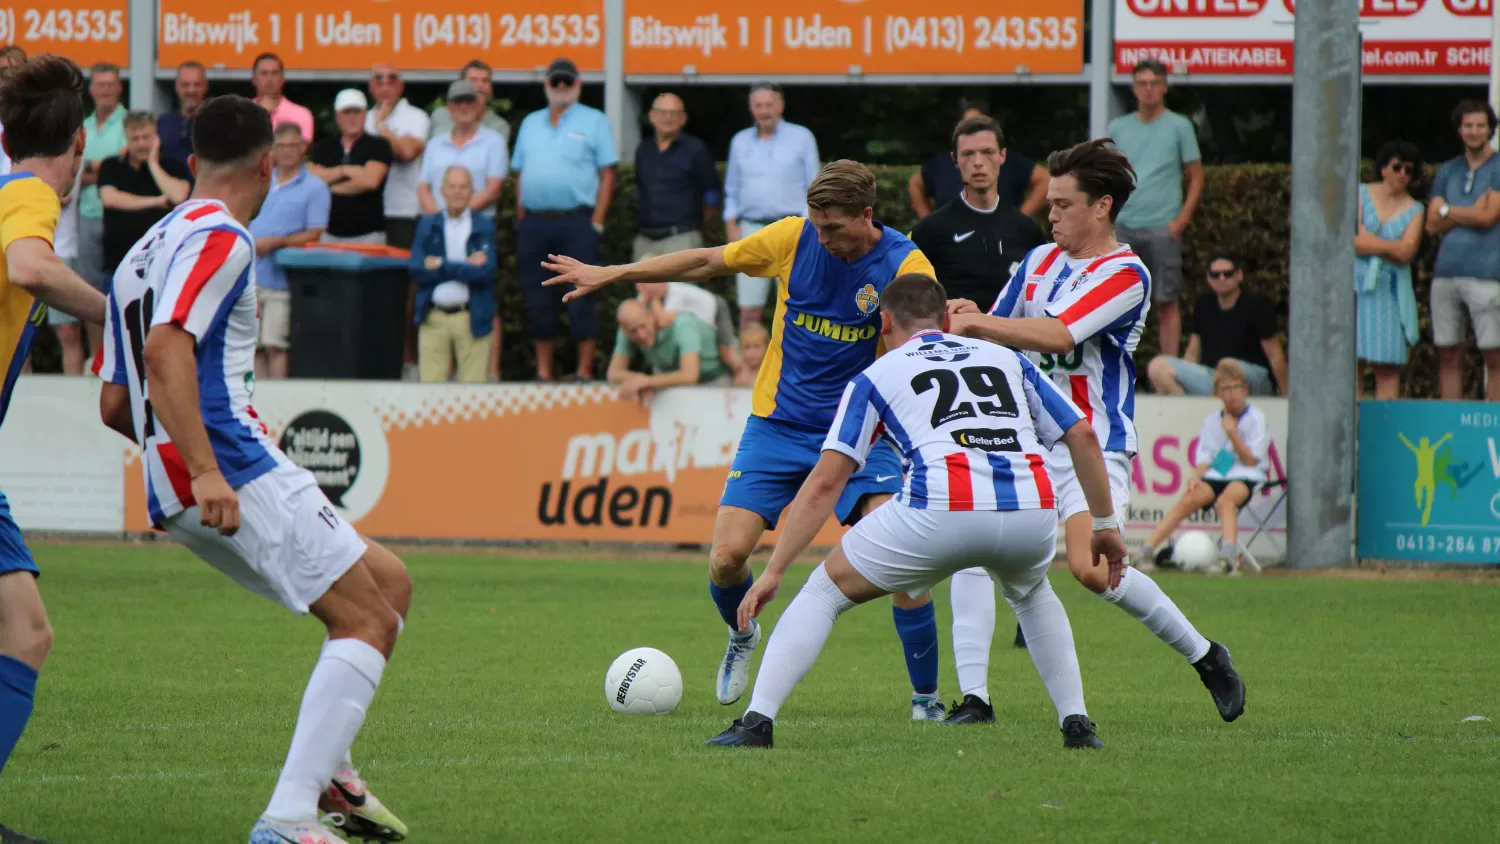 UDI’19 verliest de derby tegen Blauw Geel’38 met 1-2